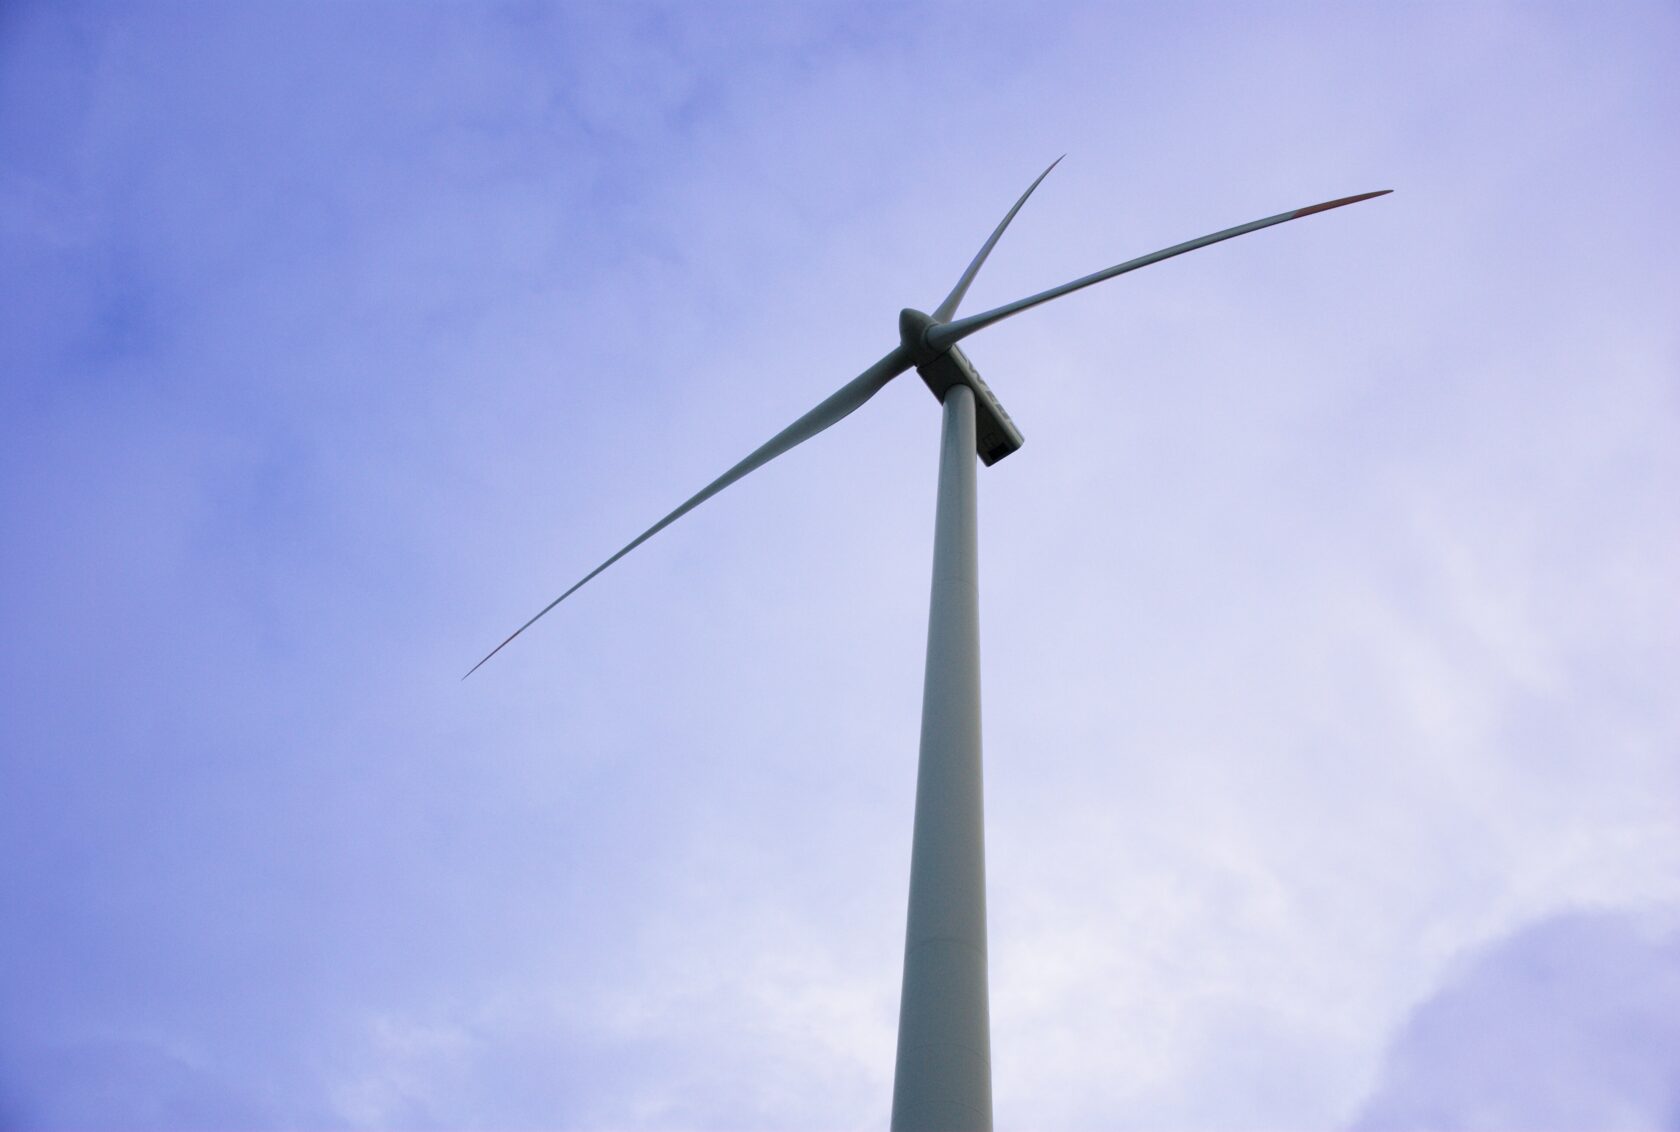 In Deutschland entsteht das größte Windrad der Welt - Es wird fast doppelt  so viel Energie wie normale Windräder liefern